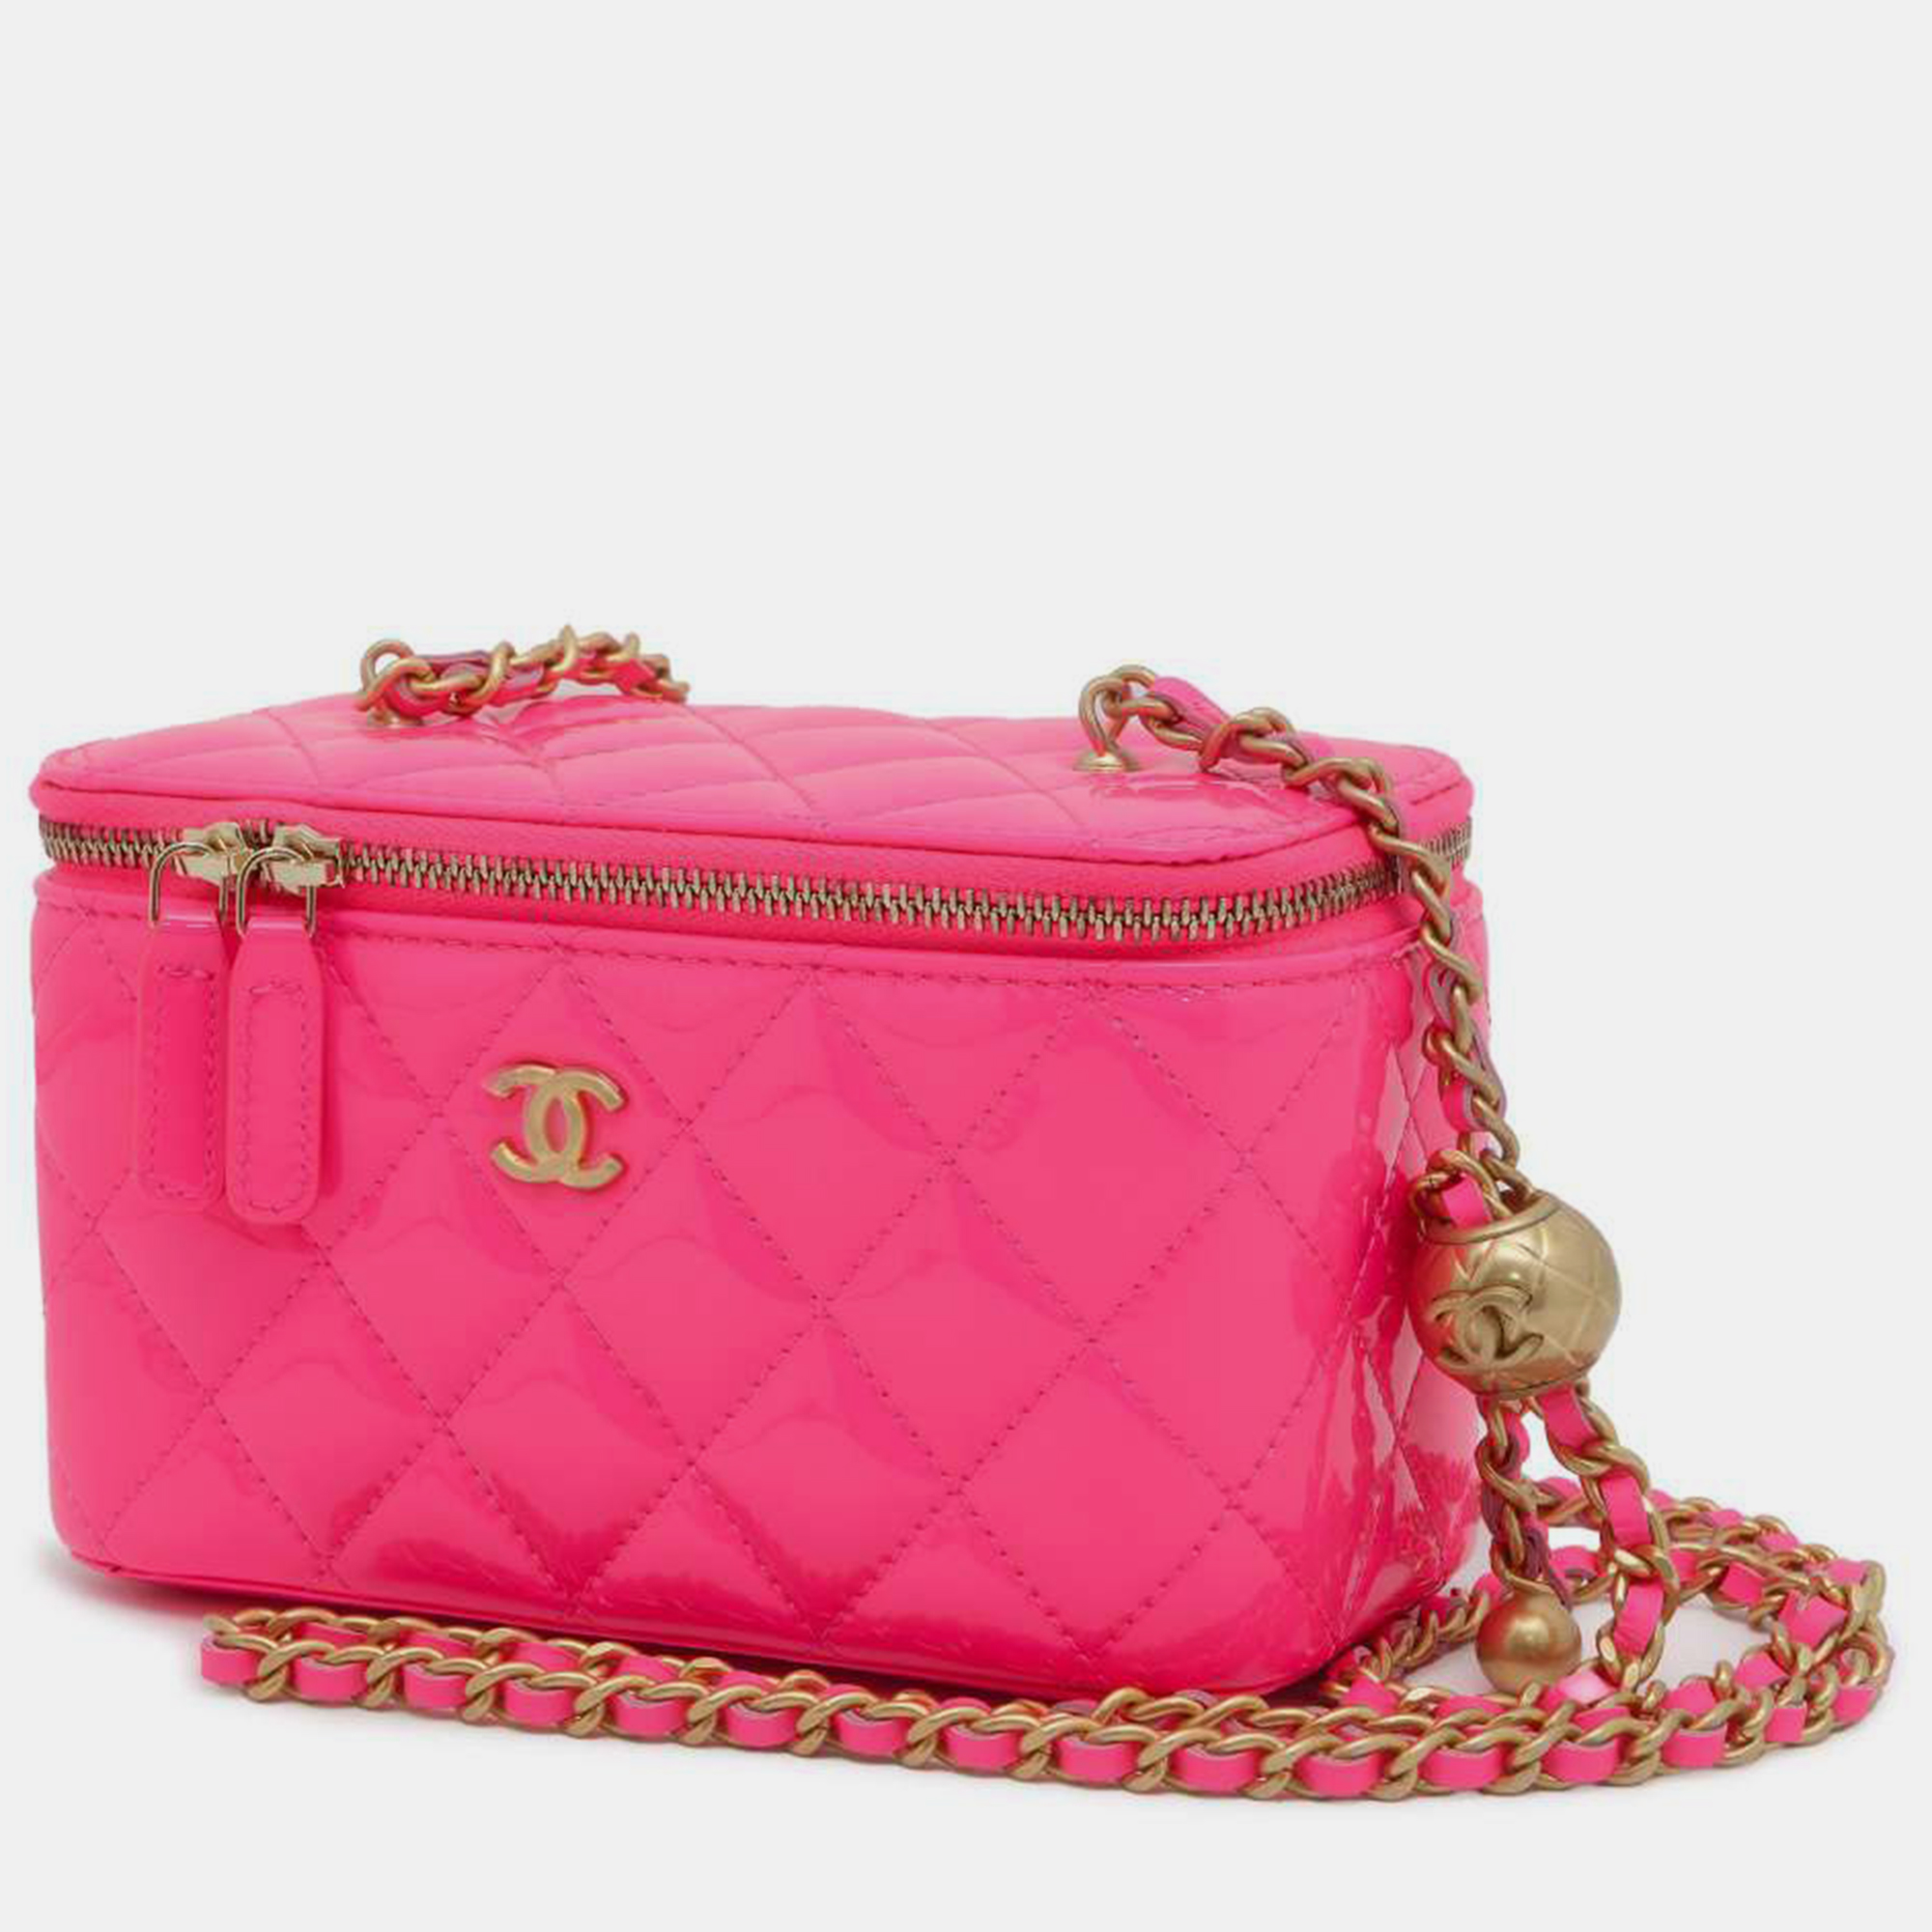 Chanel pink leather vanity case chain shoulder bag